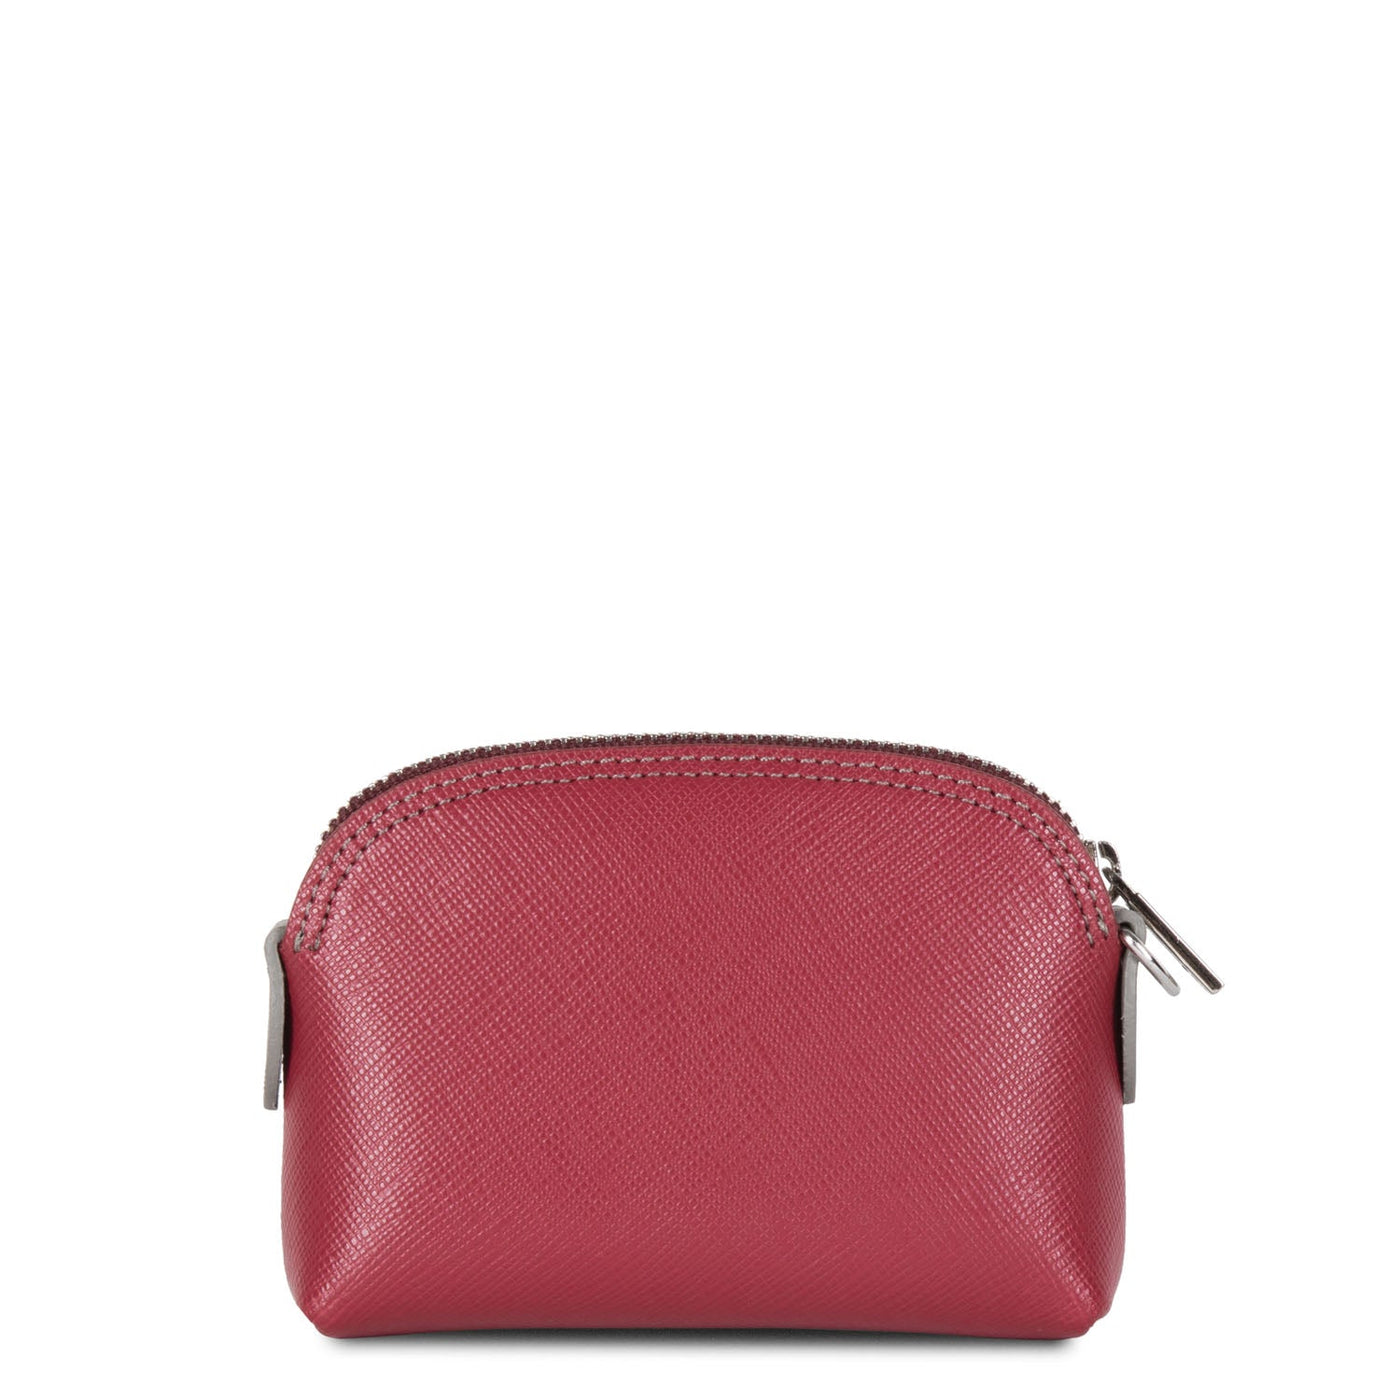 coin purse - saffiano intemporel #couleur_framboise-bordeaux-gris-chaud